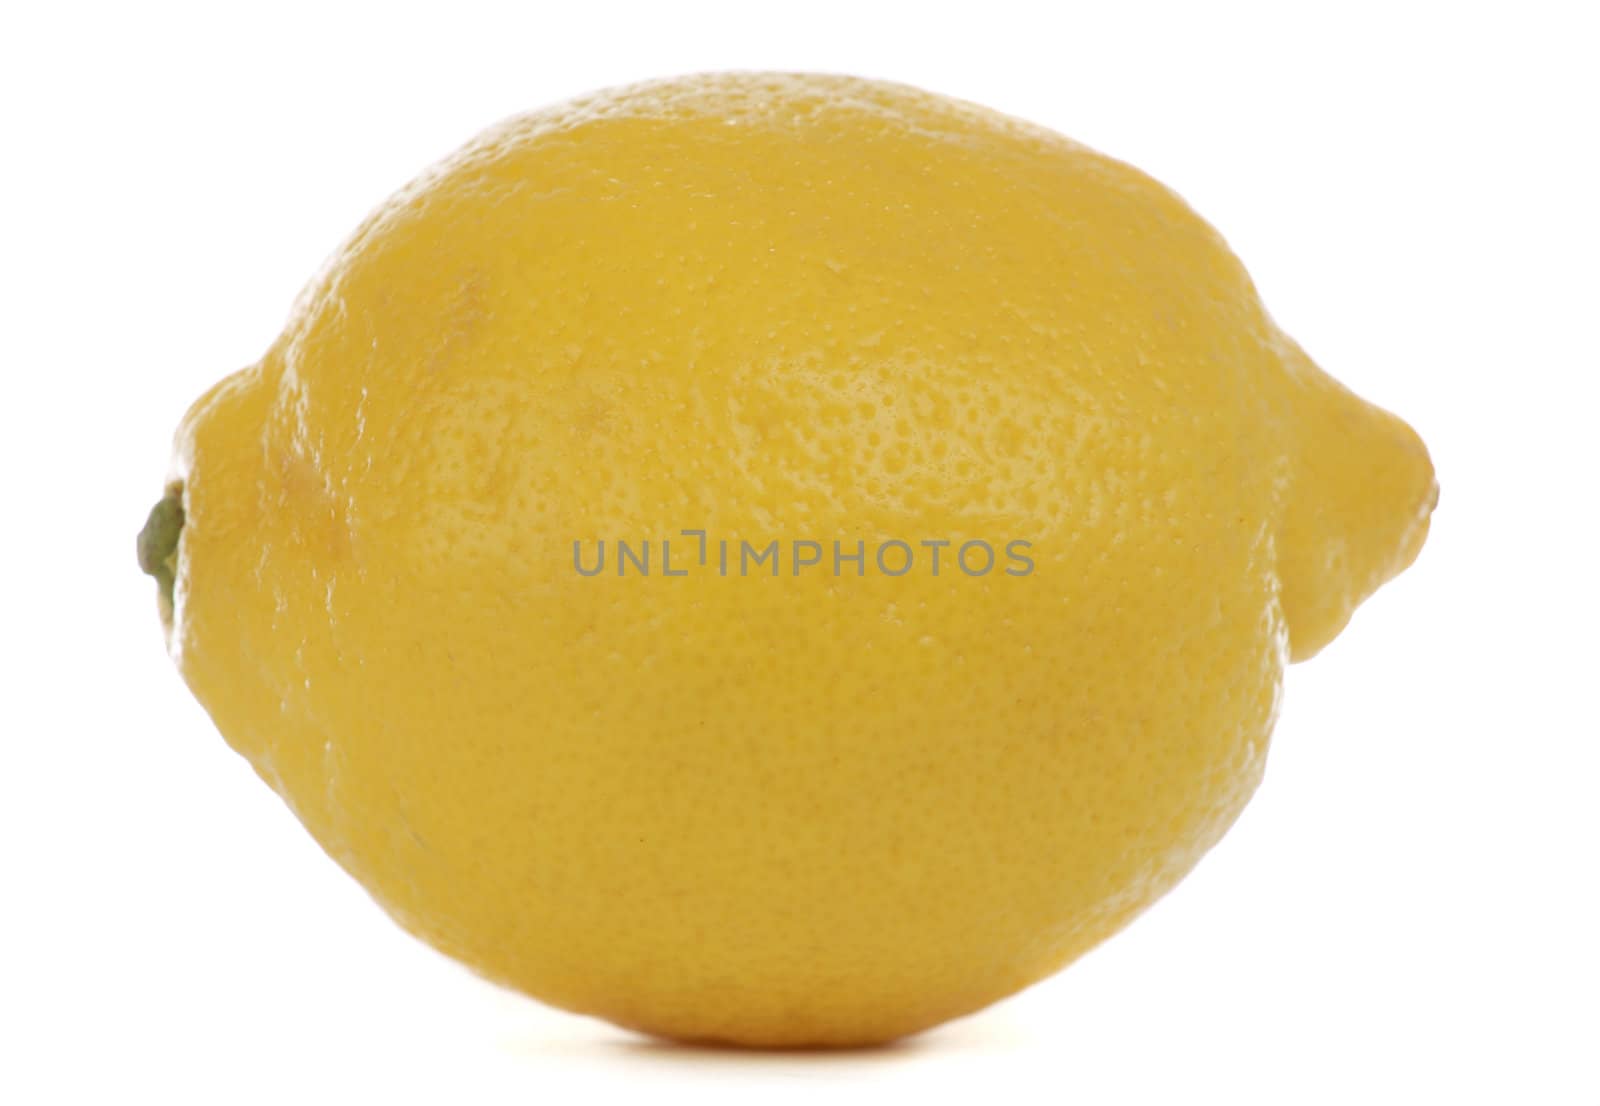 yellow lemon isolated on white background